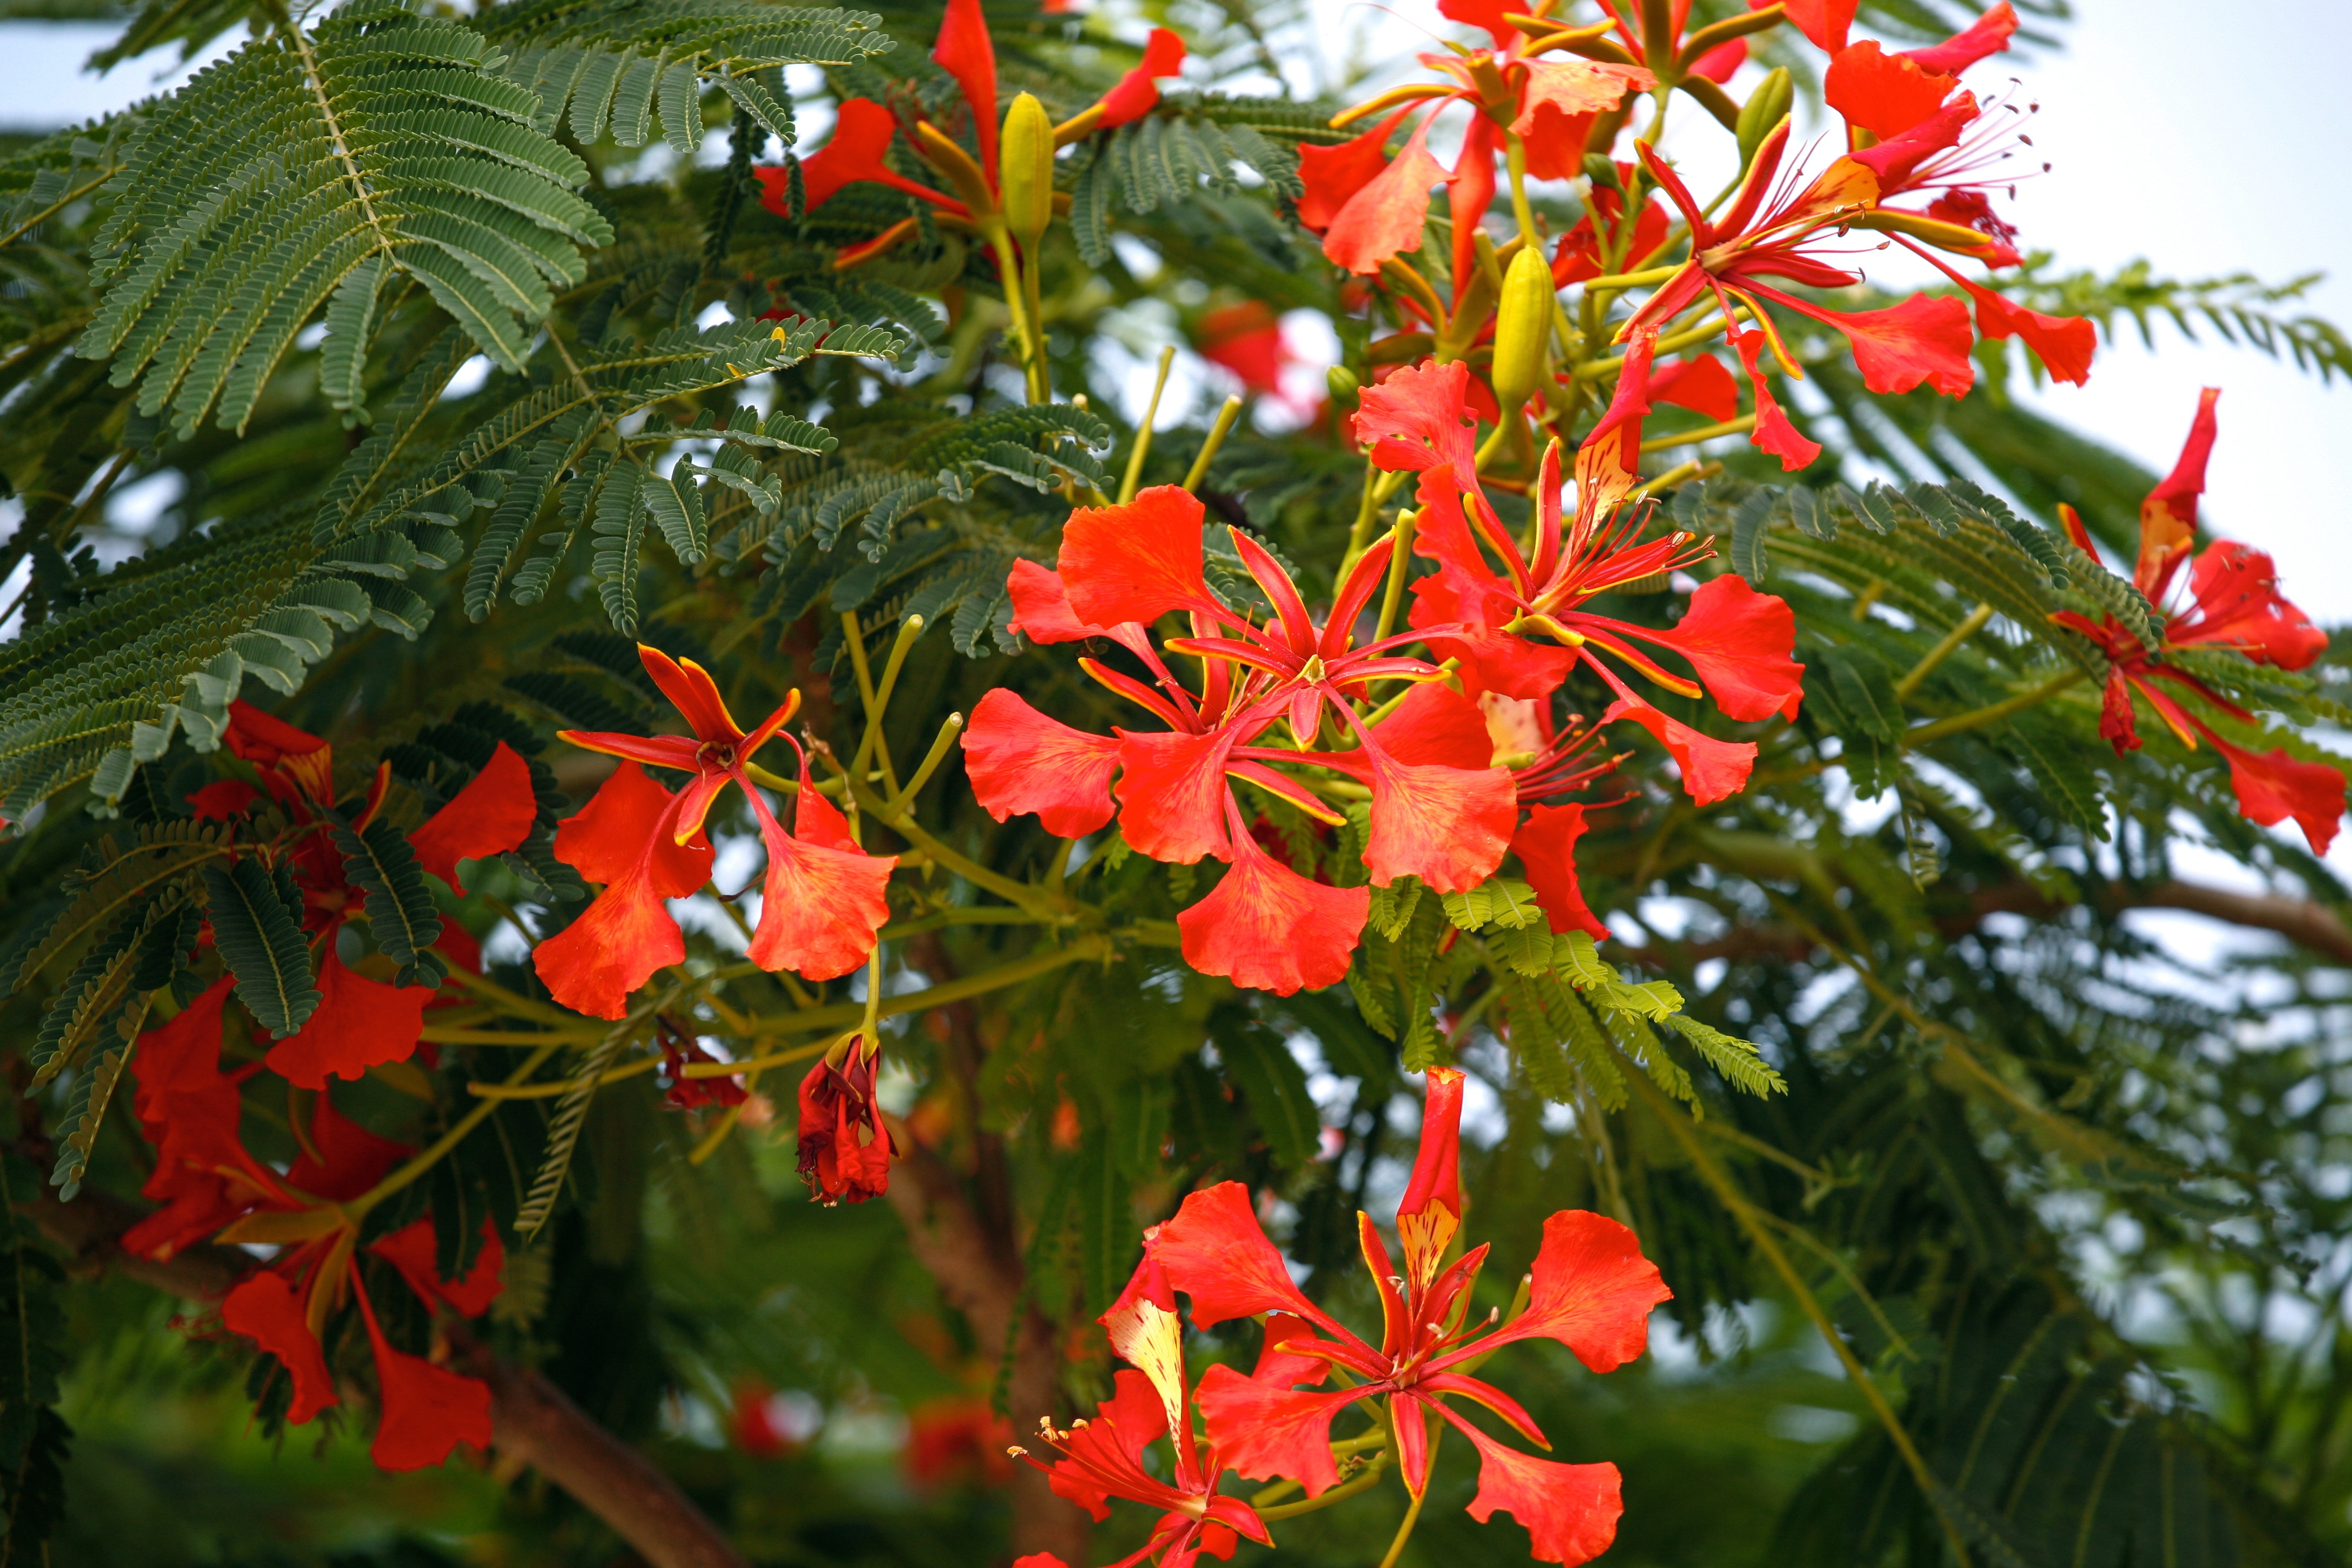 File:Red Flowering Tree Huacachina (7136493787).jpg - Wikimedia Commons